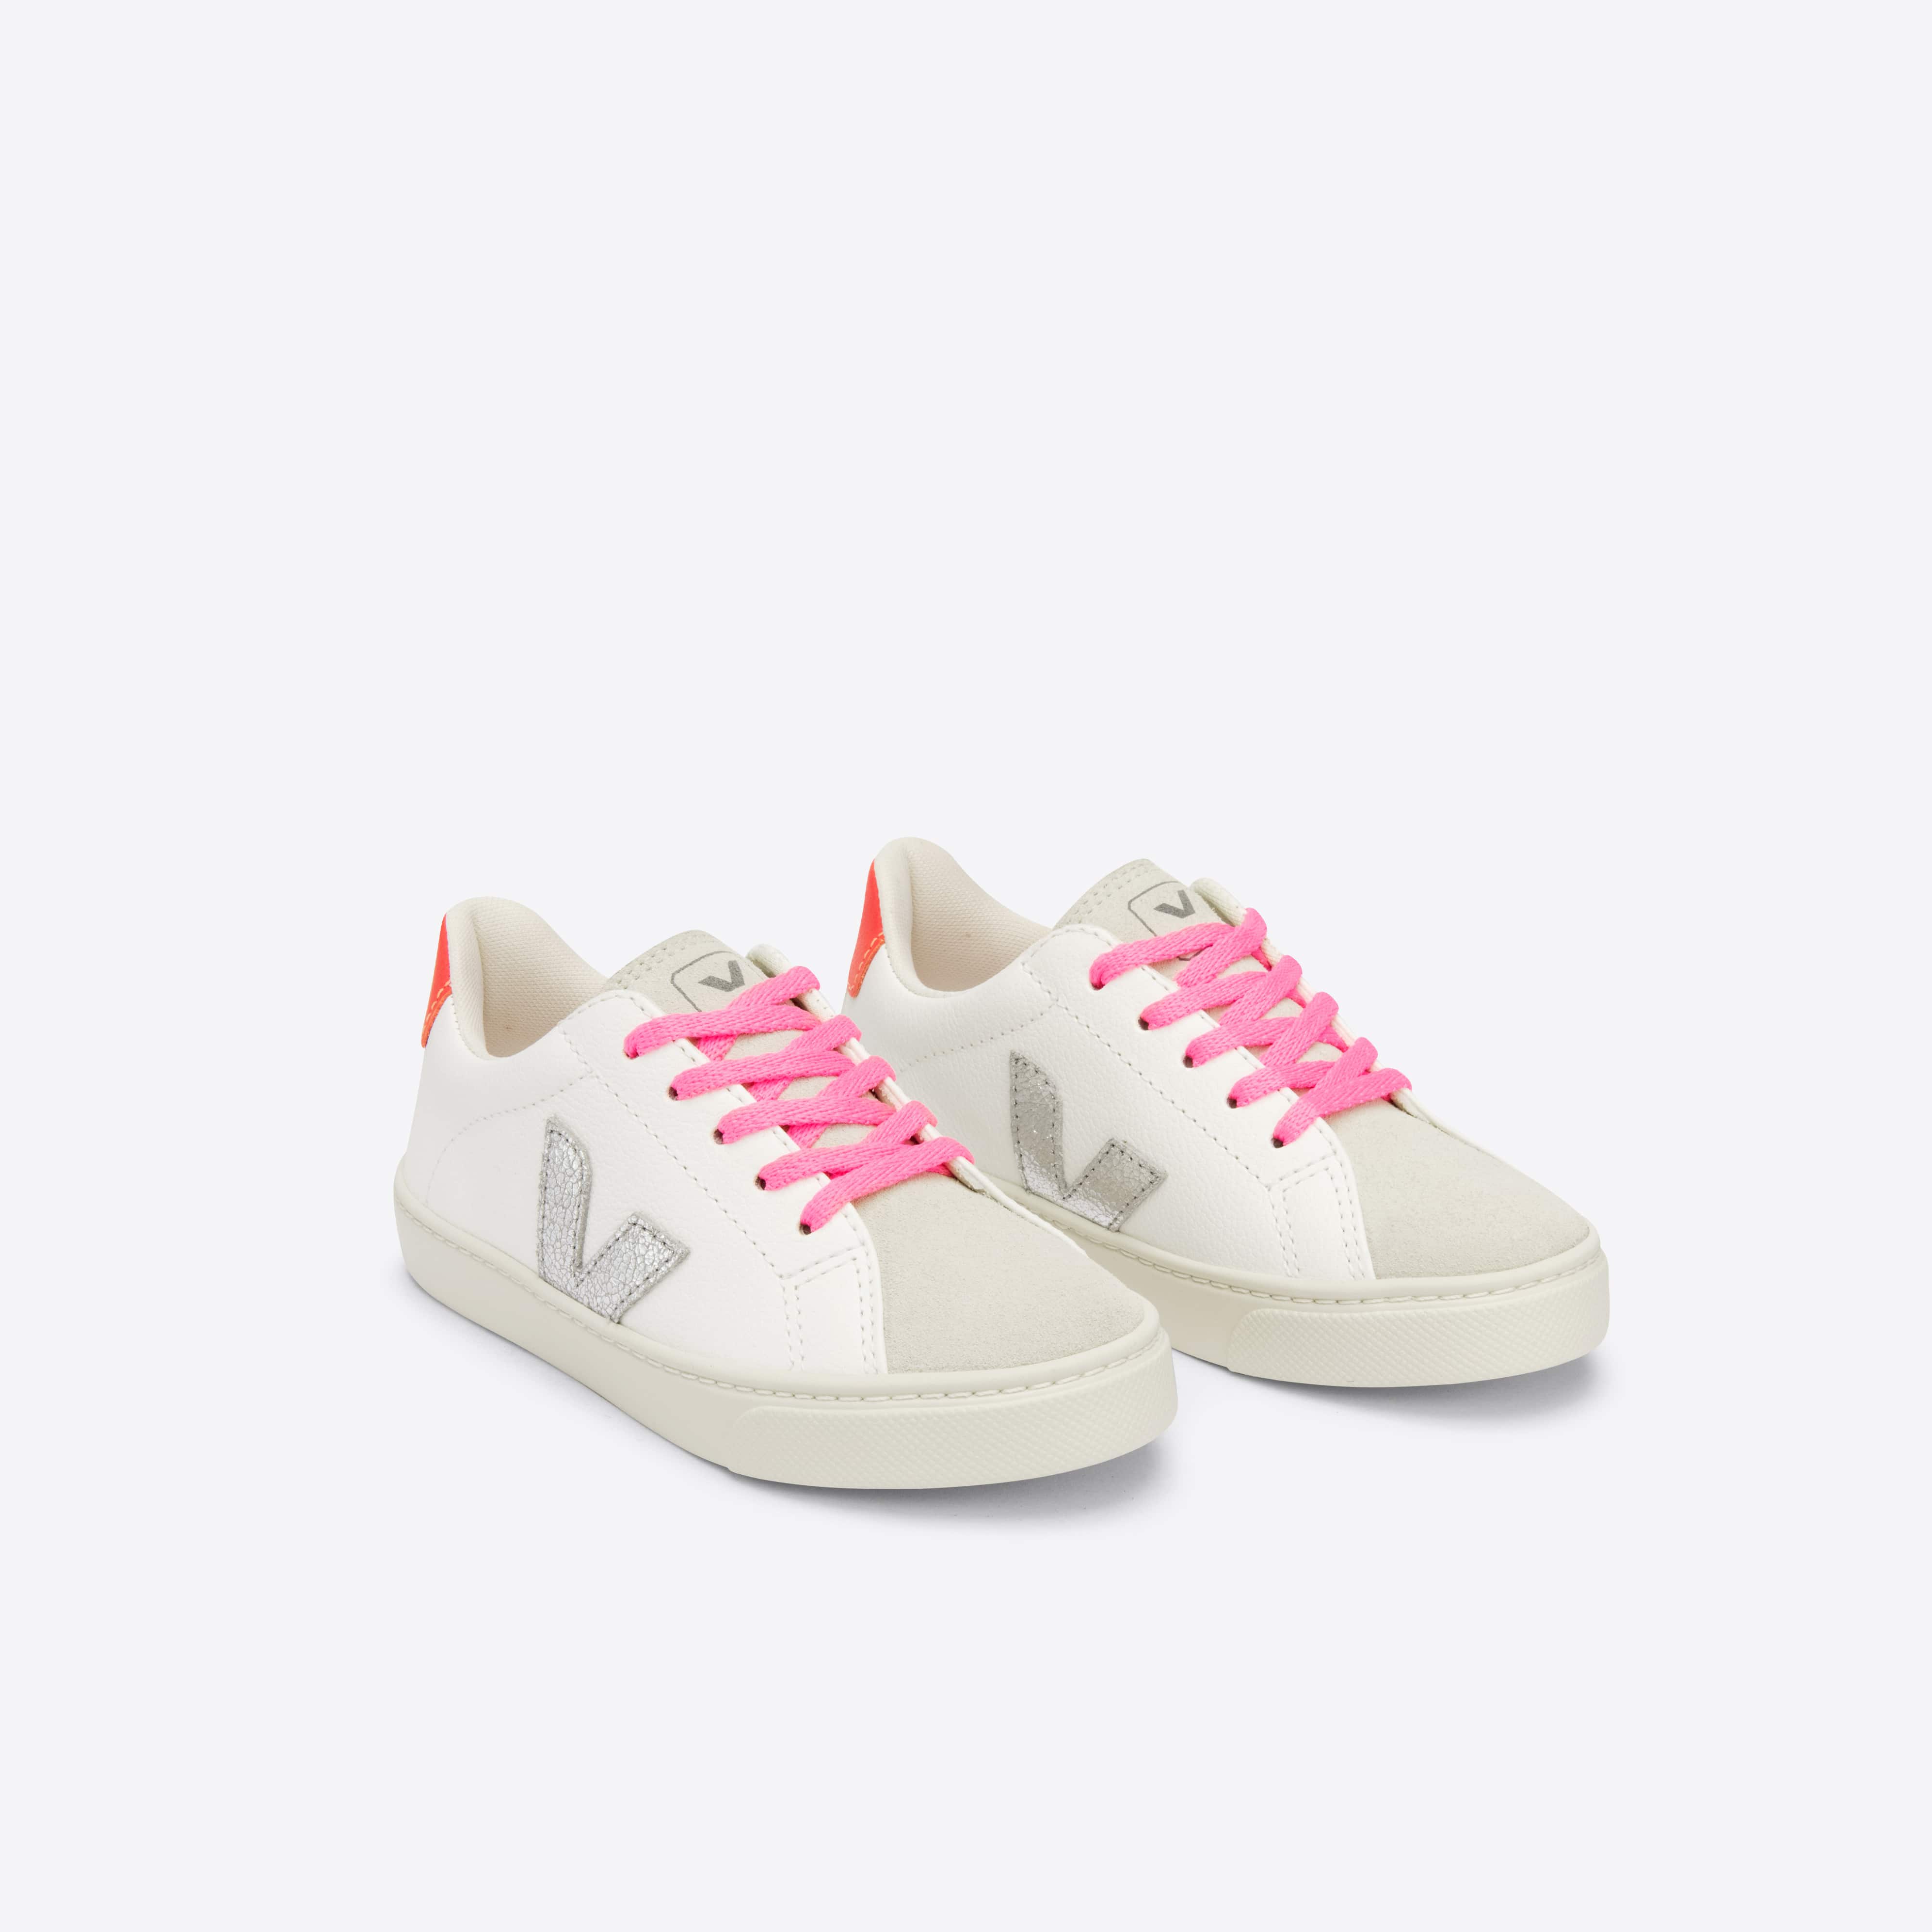 Boys & Girls Pink "V" Shoes